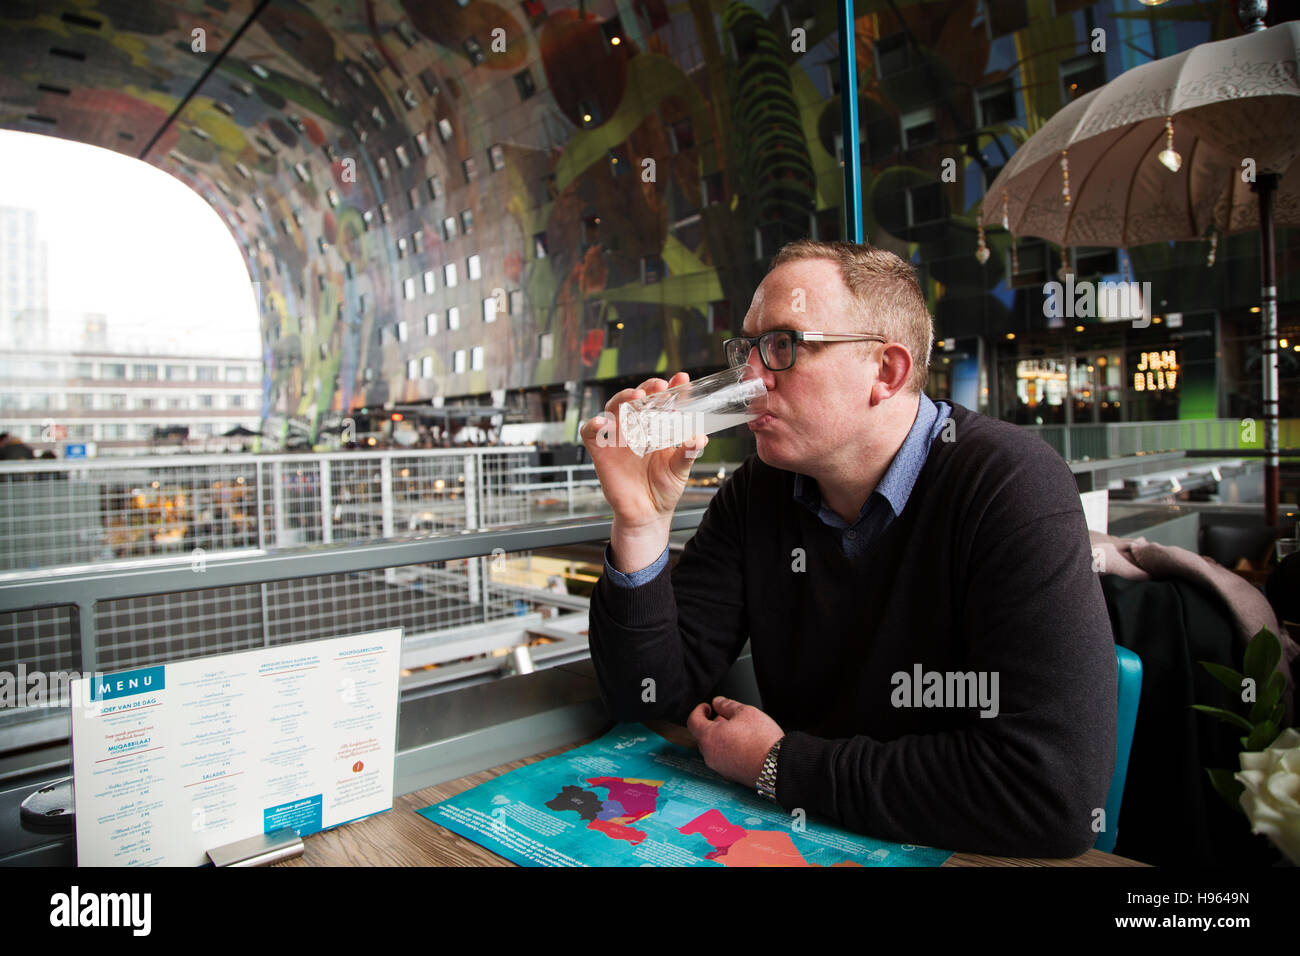 Ein Mann trinkt eine Limonade in einem Restaurant in Markthal in Rotterdam, Niederlande. Die Markthalle und Apartment-Komplex wurde im Jahr 2014 eröffnet. Stockfoto